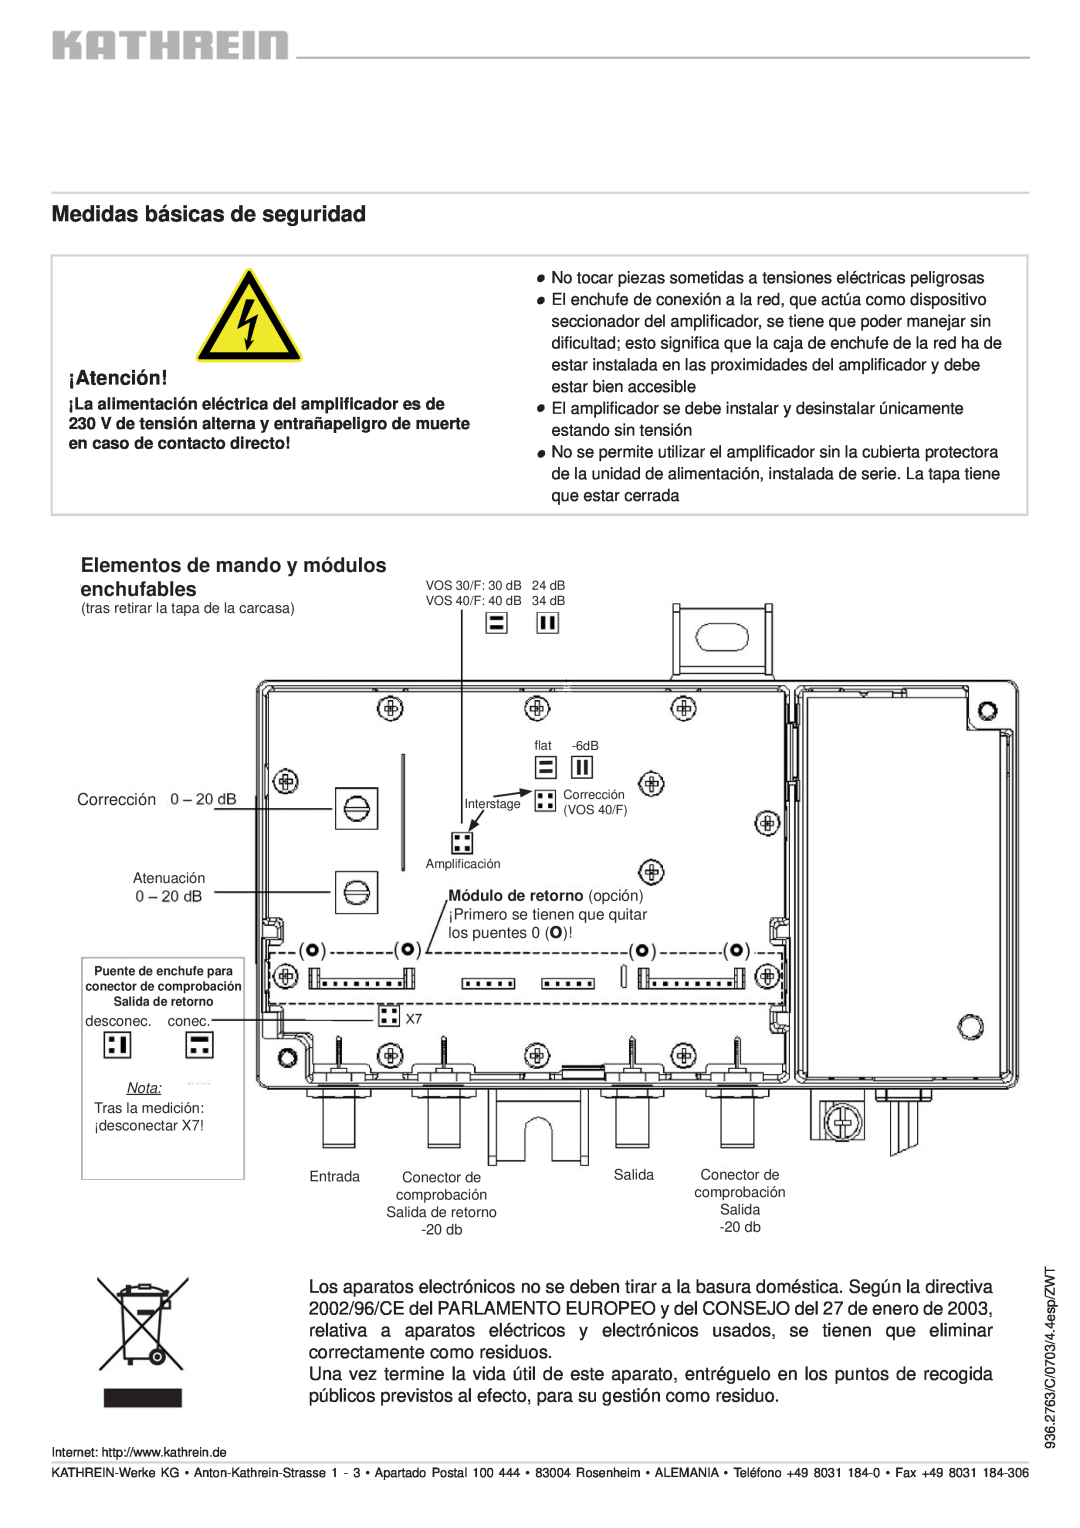 Kathrein VOS 40/F, VOS 30/F manual Medidas básicas de seguridad, ¡Atención, Elementos de mando y módulos enchufables 